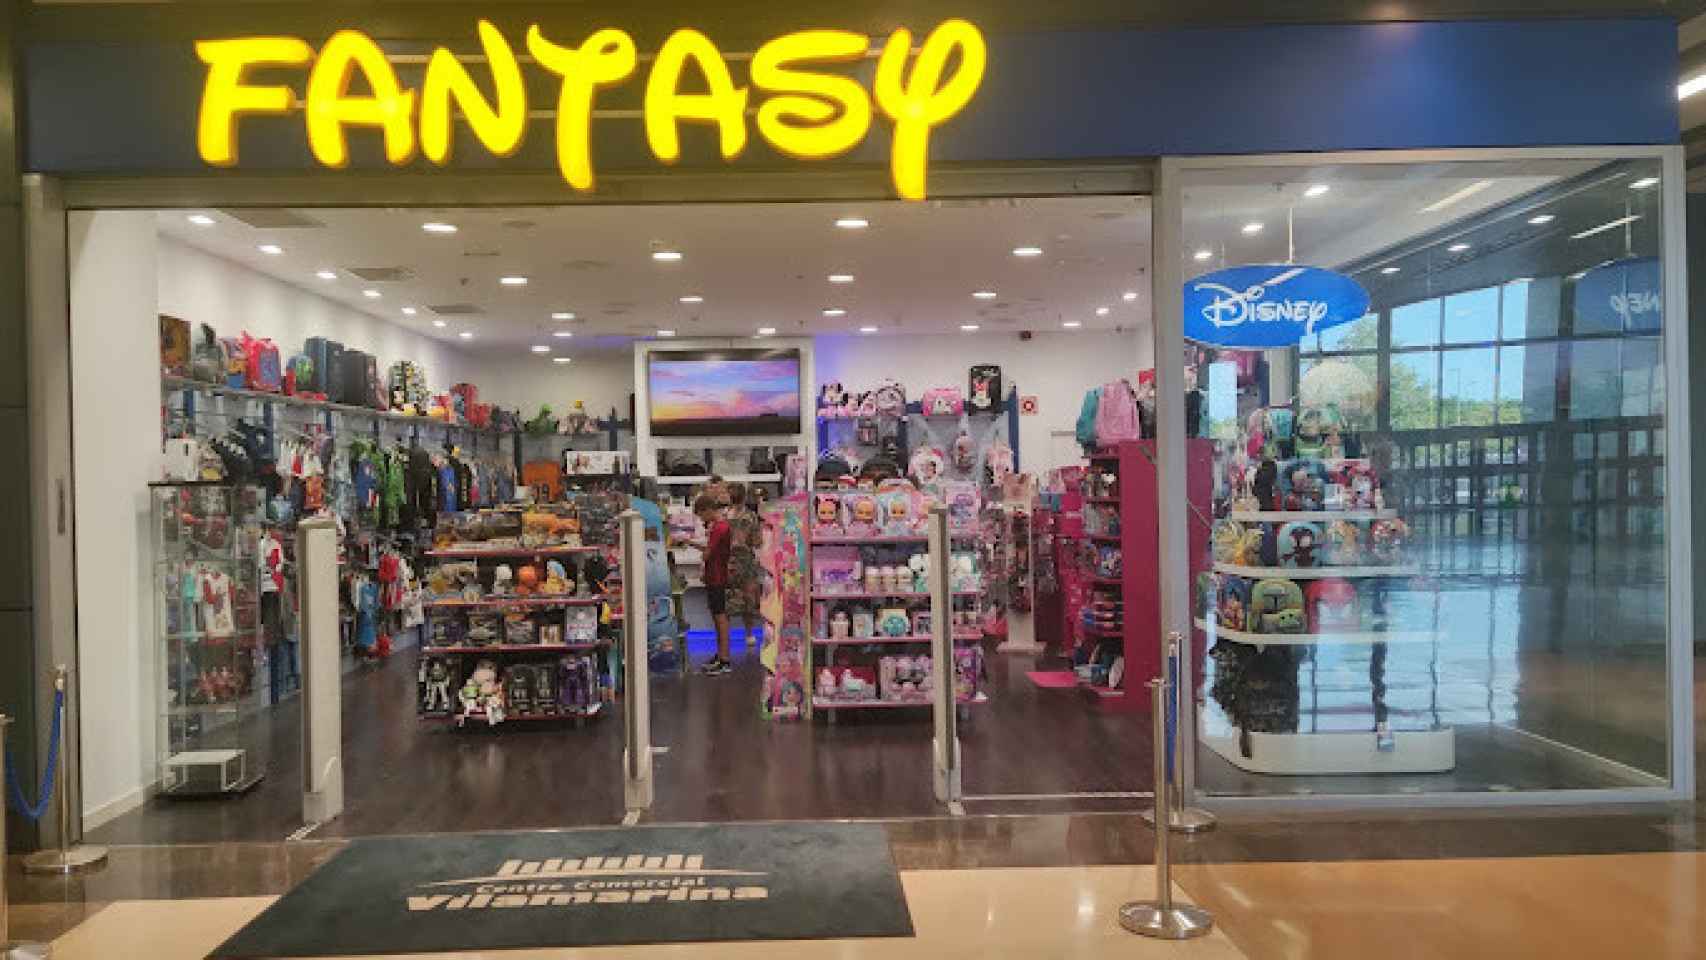 La tienda Fantasy que vende productos Disney en Viladecans